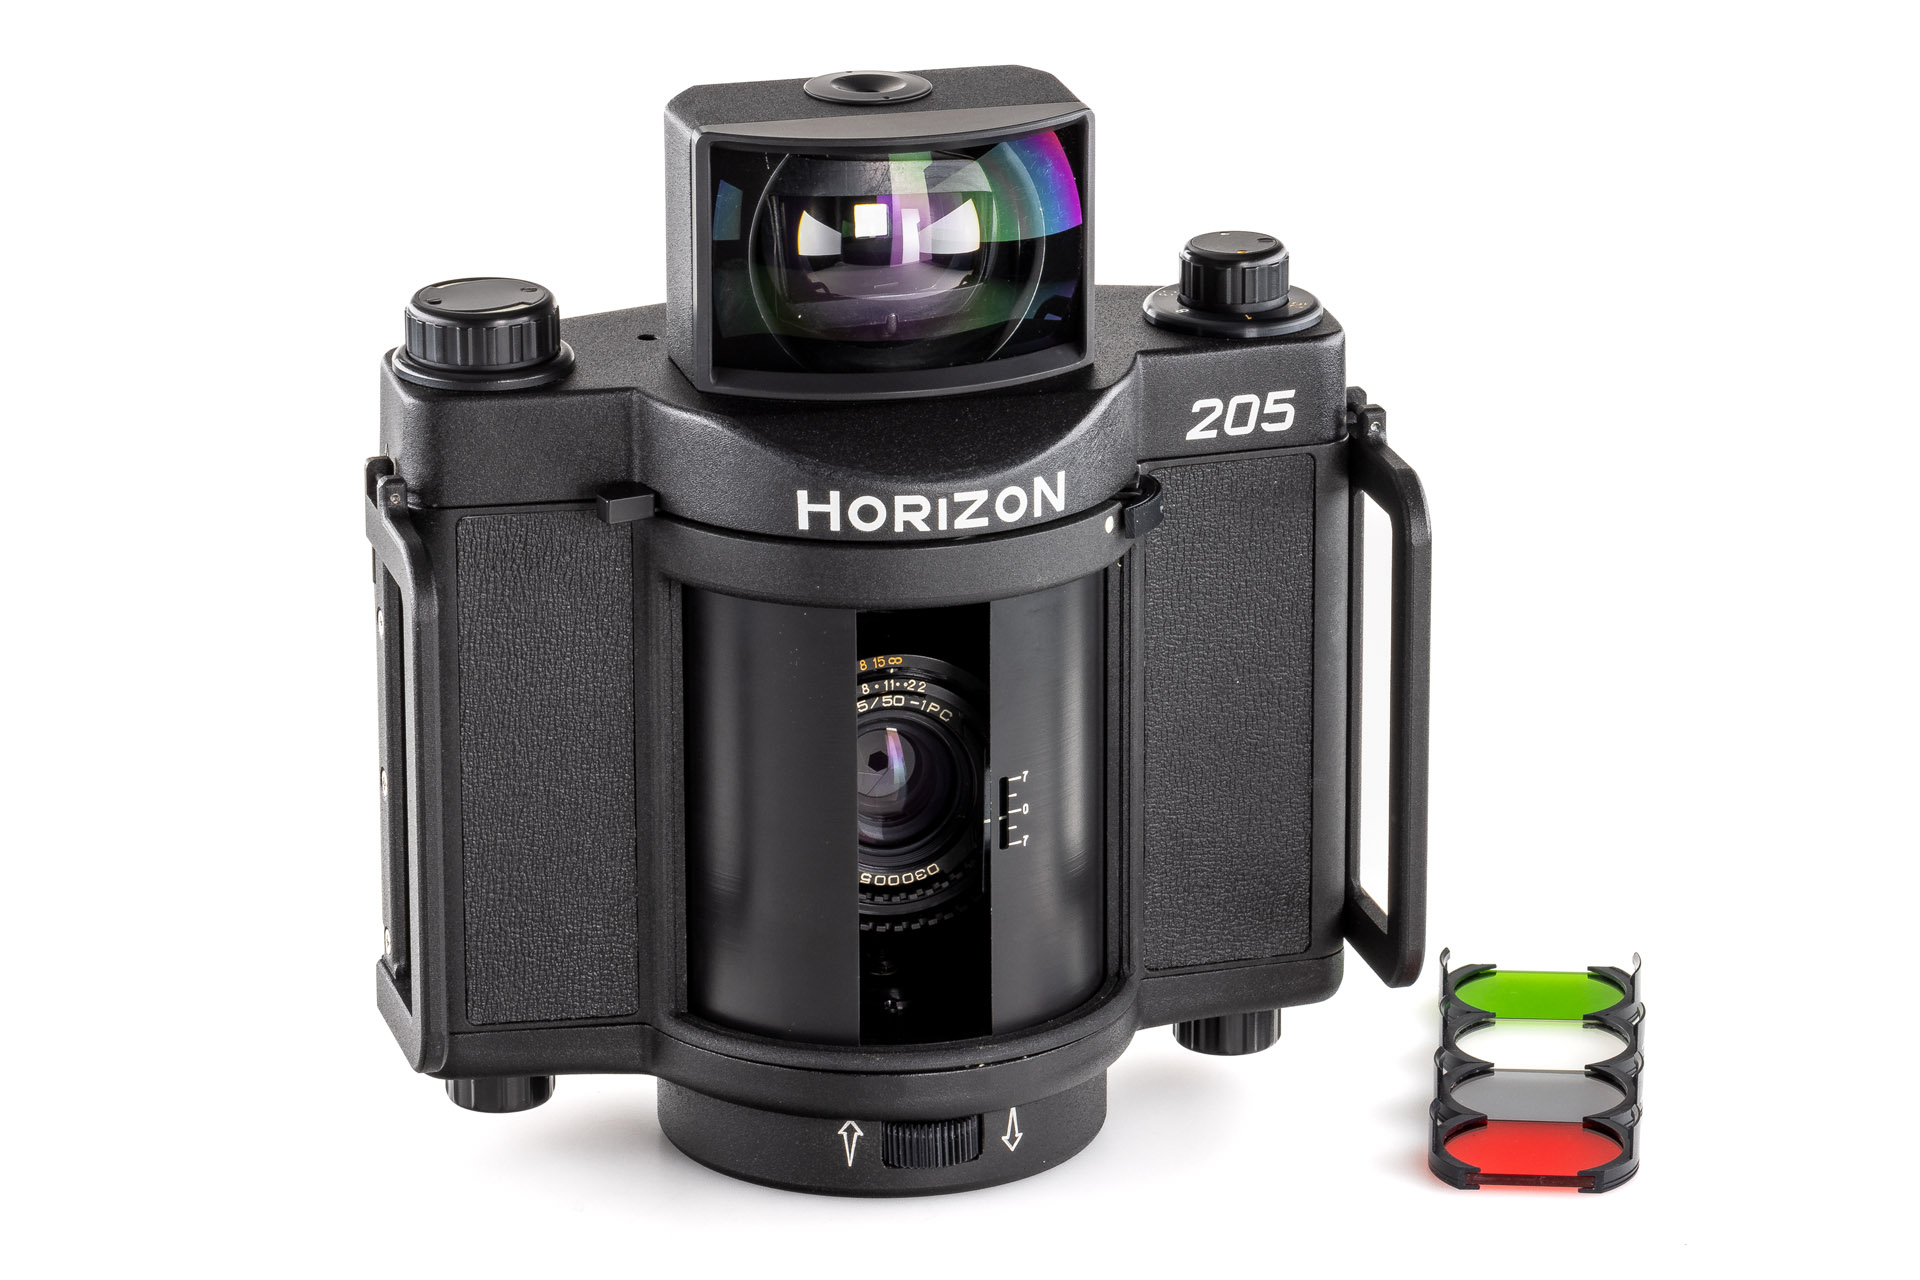 KMZ Horizon 205 Panoramic Camera prototype